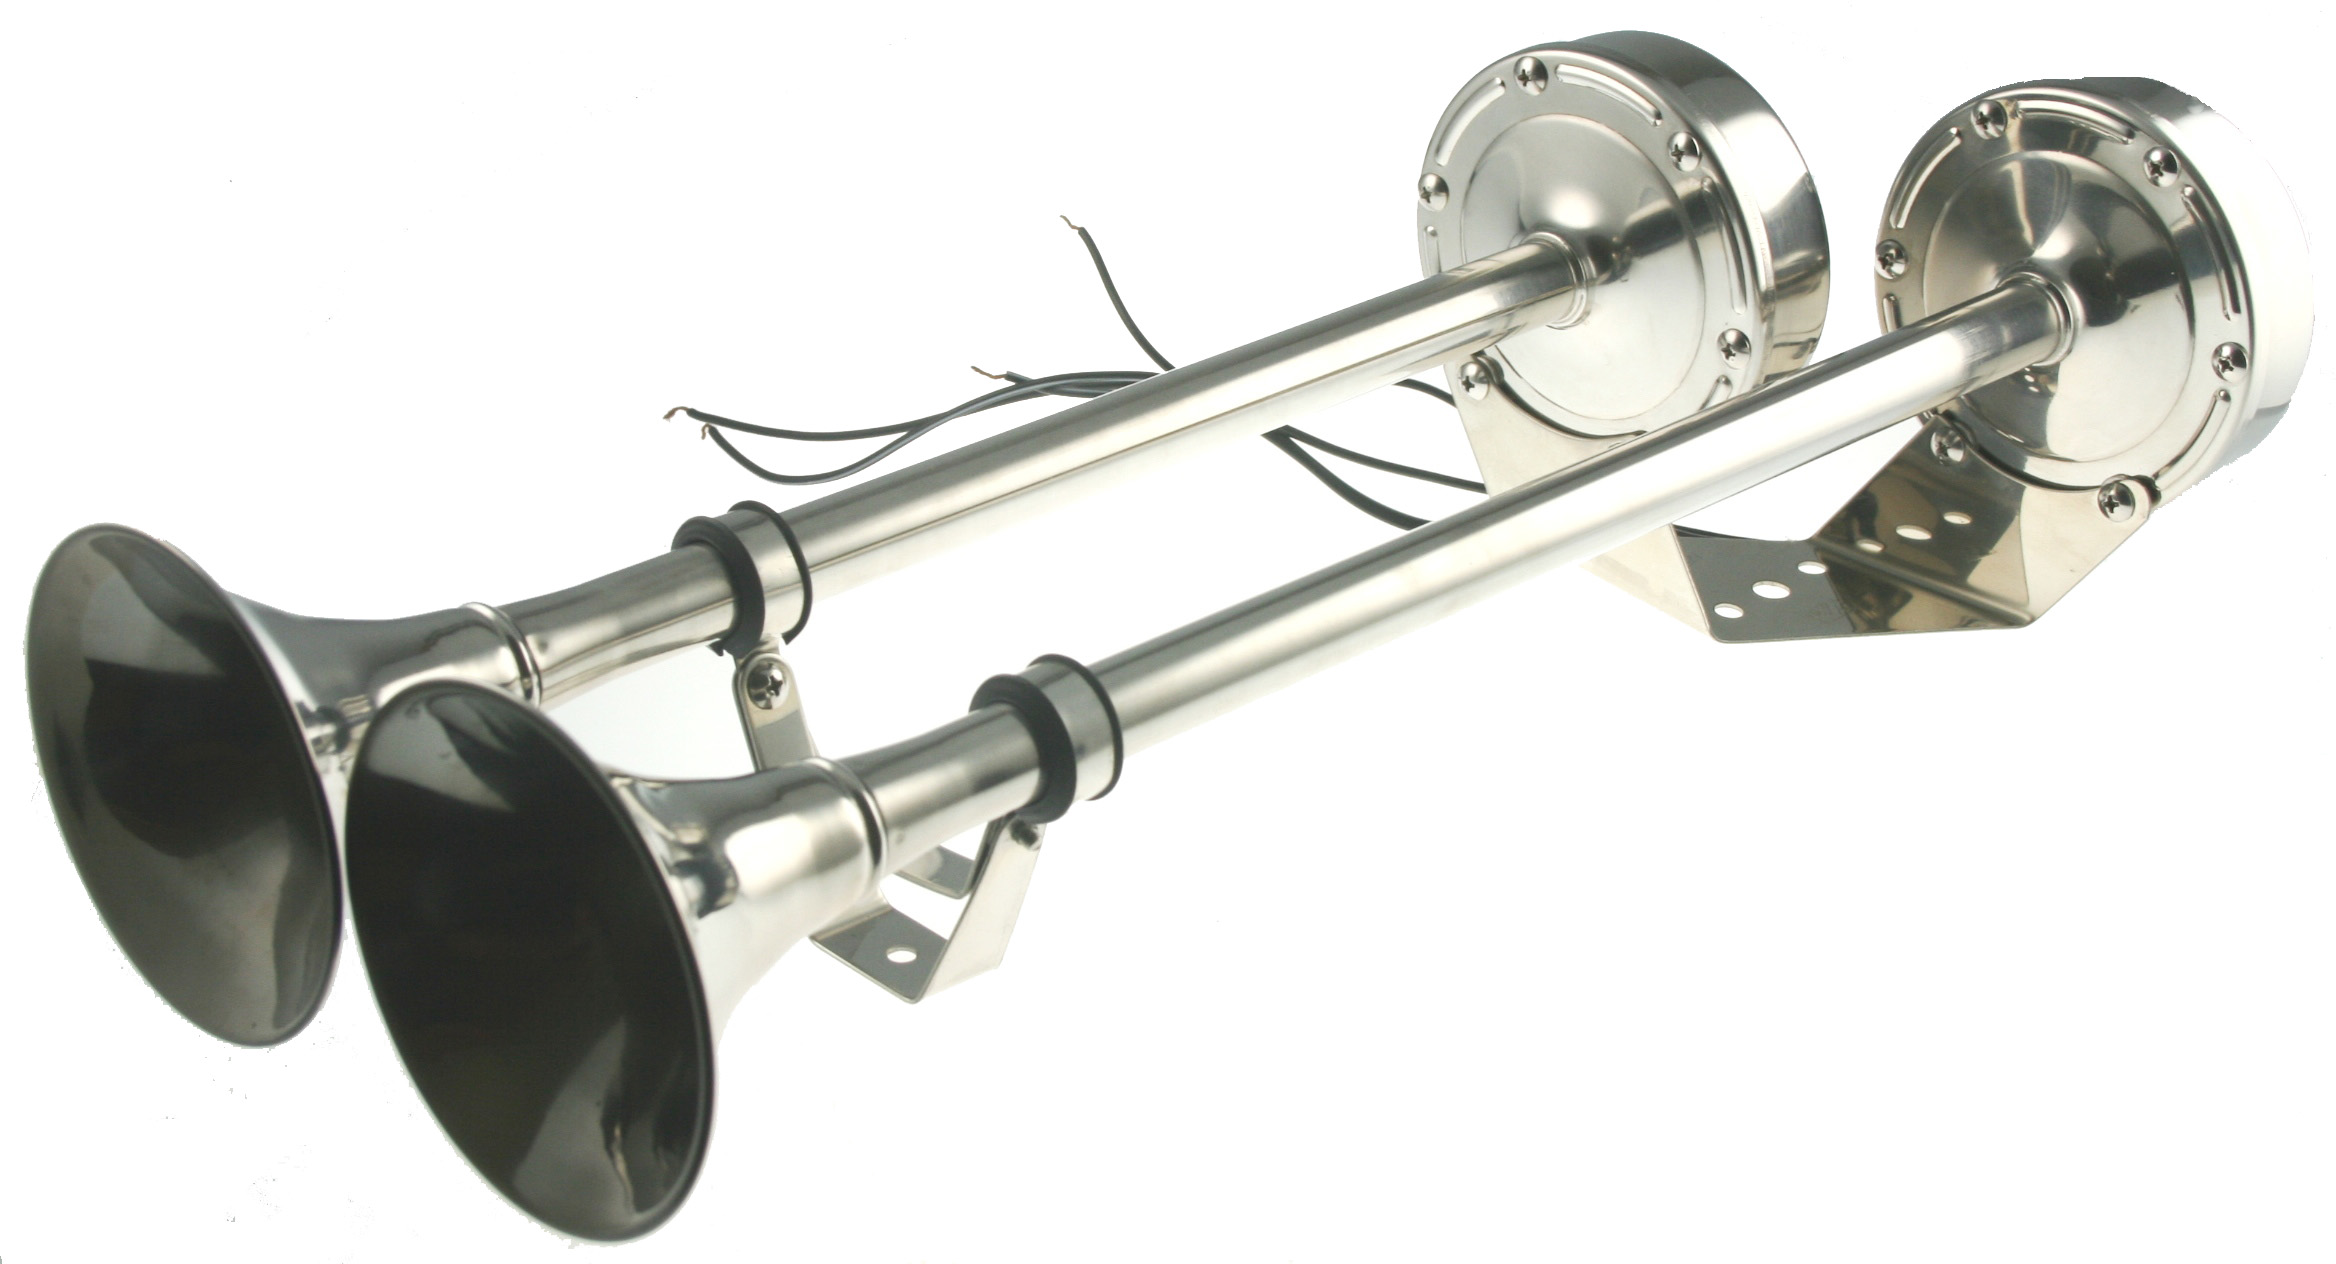 Signalhorn Doppelsignalhorn Doppelhorn elektrisch 12V ARBO-INOX